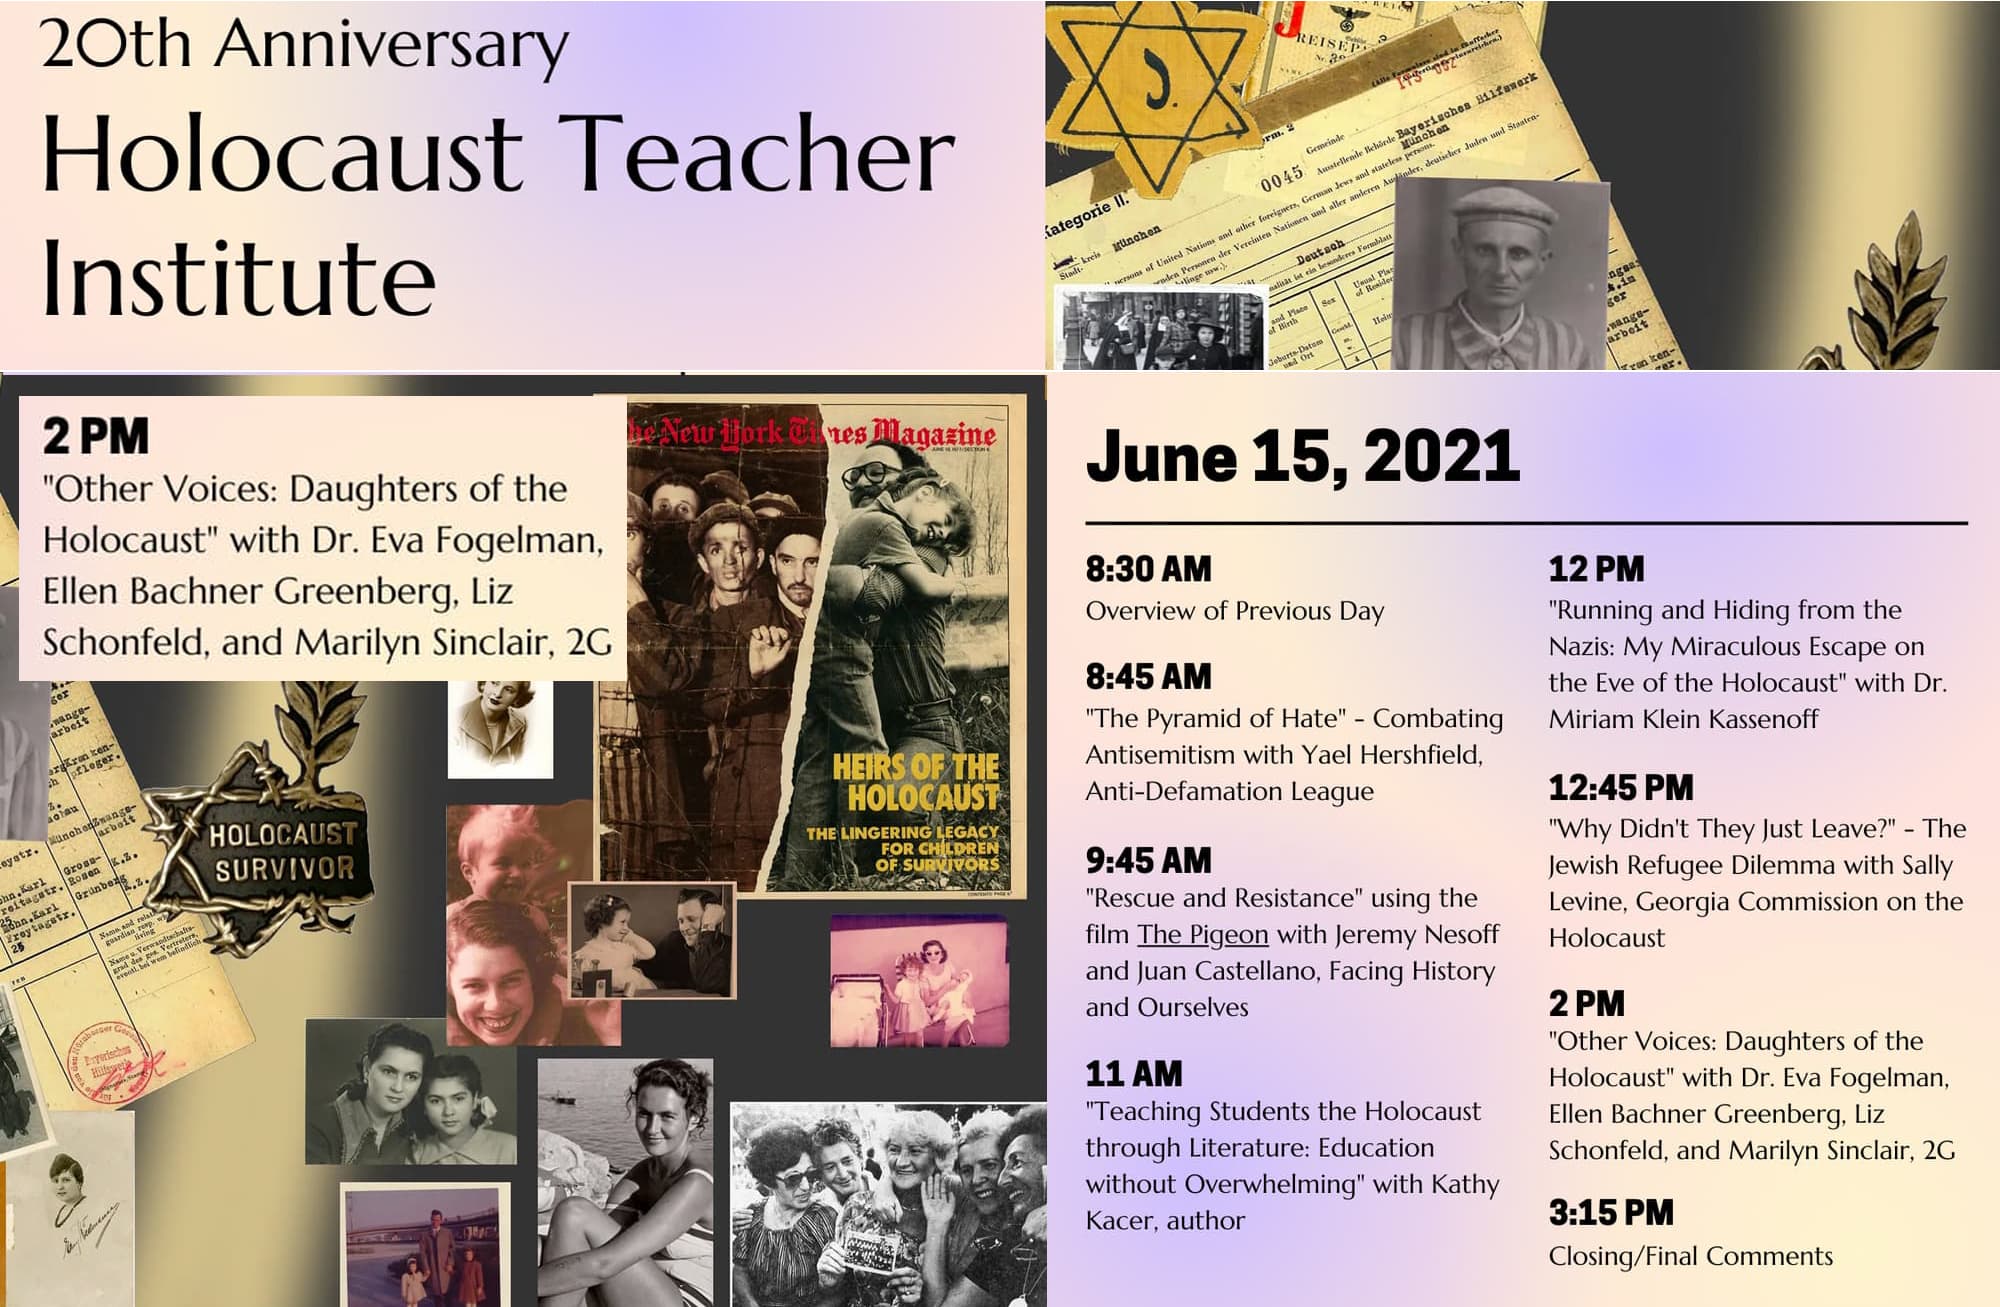 20th Annual Holocaust Teacher Institute | University of Miami